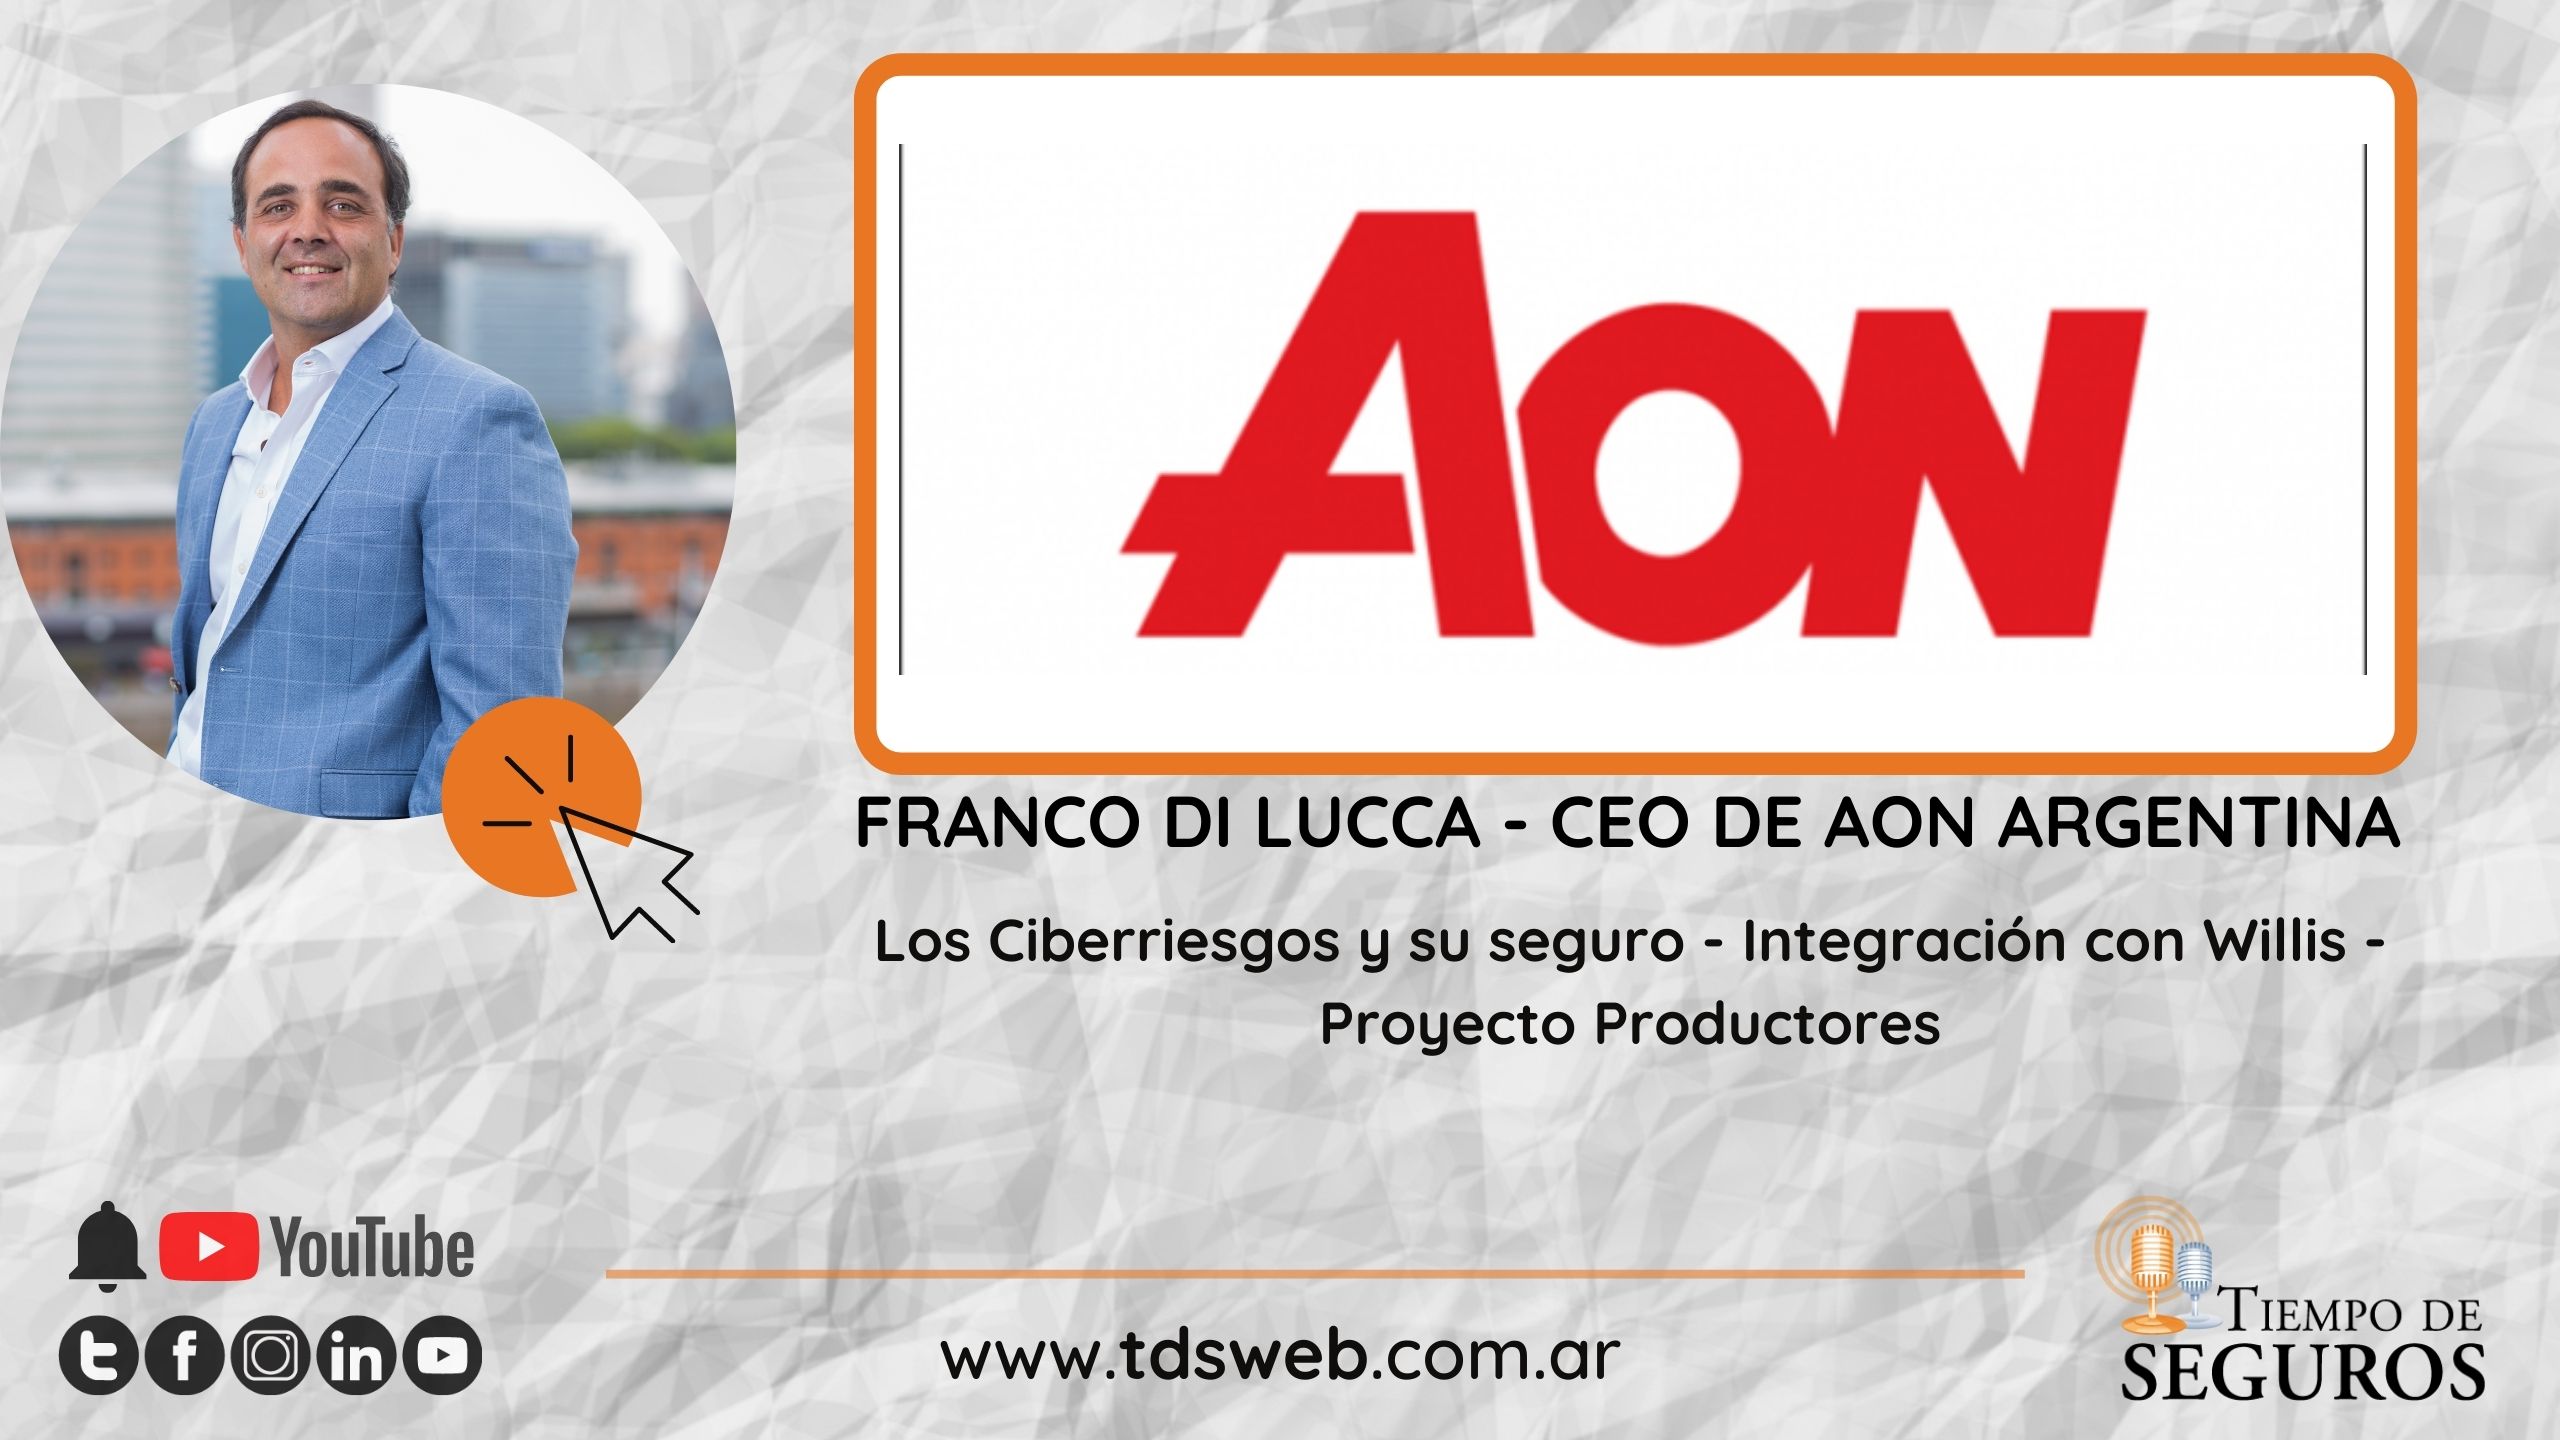 AON ARGENTINA: Conversamos con Franco Di Lucca, CEO de este broker líder a nivel mundial y local.